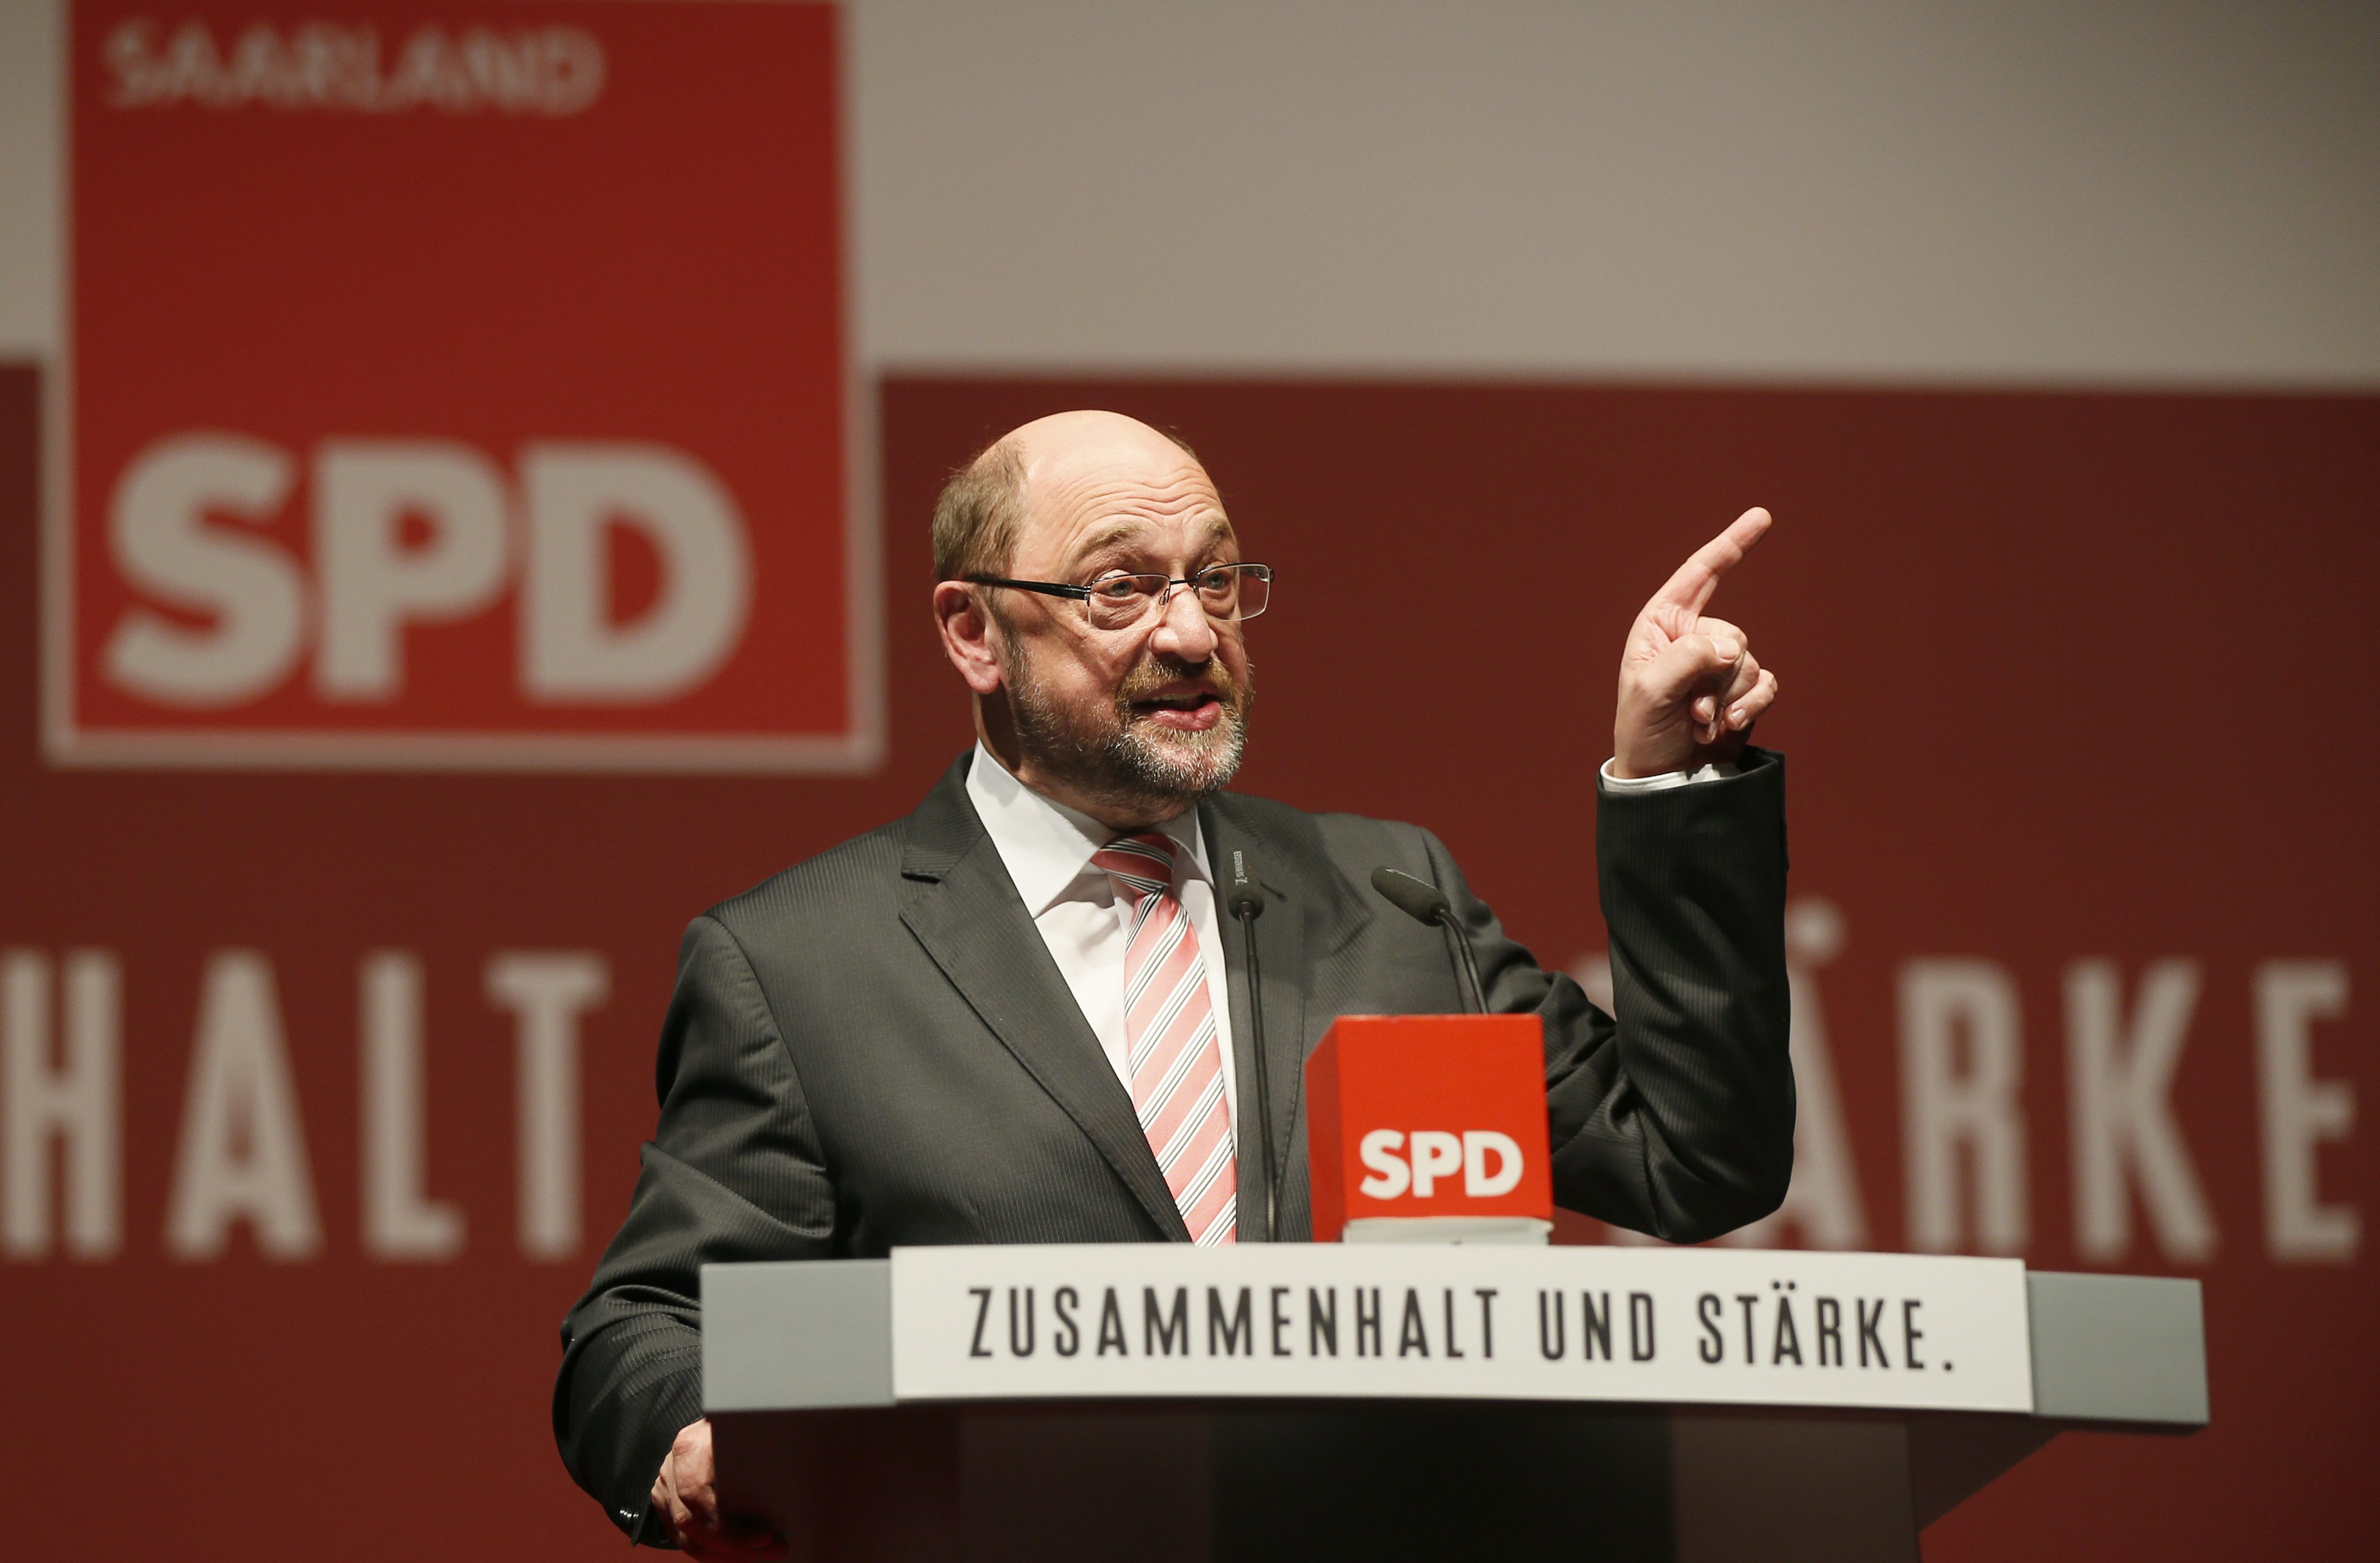 Ο Σουλτς δίνει φτερά στο SPD, φέρνοντας μέχρι και φάντασμα άλλης κυβέρνησης